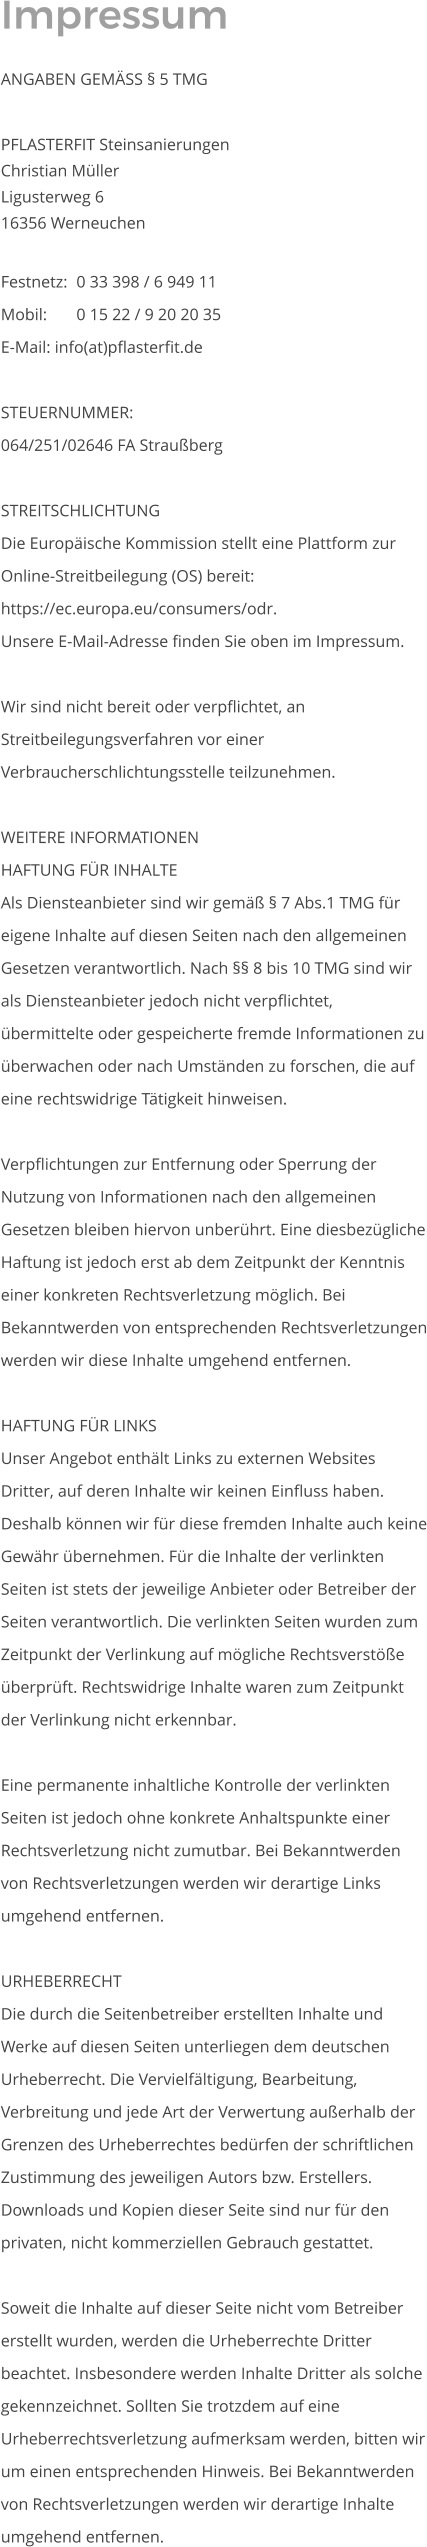 Impressum  ANGABEN GEMÄSS § 5 TMG  PFLASTERFIT Steinsanierungen Christian Müller Ligusterweg 6  16356 Werneuchen   Festnetz: 	0 33 398 / 6 949 11 Mobil: 	0 15 22 / 9 20 20 35 E-Mail: info(at)pflasterfit.de  STEUERNUMMER: 064/251/02646 FA Straußberg  STREITSCHLICHTUNG Die Europäische Kommission stellt eine Plattform zur Online-Streitbeilegung (OS) bereit: https://ec.europa.eu/consumers/odr. Unsere E-Mail-Adresse finden Sie oben im Impressum.  Wir sind nicht bereit oder verpflichtet, an Streitbeilegungsverfahren vor einer Verbraucherschlichtungsstelle teilzunehmen.  WEITERE INFORMATIONEN HAFTUNG FÜR INHALTE Als Diensteanbieter sind wir gemäß § 7 Abs.1 TMG für eigene Inhalte auf diesen Seiten nach den allgemeinen Gesetzen verantwortlich. Nach §§ 8 bis 10 TMG sind wir als Diensteanbieter jedoch nicht verpflichtet, übermittelte oder gespeicherte fremde Informationen zu überwachen oder nach Umständen zu forschen, die auf eine rechtswidrige Tätigkeit hinweisen.  Verpflichtungen zur Entfernung oder Sperrung der Nutzung von Informationen nach den allgemeinen Gesetzen bleiben hiervon unberührt. Eine diesbezügliche Haftung ist jedoch erst ab dem Zeitpunkt der Kenntnis einer konkreten Rechtsverletzung möglich. Bei Bekanntwerden von entsprechenden Rechtsverletzungen werden wir diese Inhalte umgehend entfernen.  HAFTUNG FÜR LINKS Unser Angebot enthält Links zu externen Websites Dritter, auf deren Inhalte wir keinen Einfluss haben. Deshalb können wir für diese fremden Inhalte auch keine Gewähr übernehmen. Für die Inhalte der verlinkten Seiten ist stets der jeweilige Anbieter oder Betreiber der Seiten verantwortlich. Die verlinkten Seiten wurden zum Zeitpunkt der Verlinkung auf mögliche Rechtsverstöße überprüft. Rechtswidrige Inhalte waren zum Zeitpunkt der Verlinkung nicht erkennbar.  Eine permanente inhaltliche Kontrolle der verlinkten Seiten ist jedoch ohne konkrete Anhaltspunkte einer Rechtsverletzung nicht zumutbar. Bei Bekanntwerden von Rechtsverletzungen werden wir derartige Links umgehend entfernen.  URHEBERRECHT Die durch die Seitenbetreiber erstellten Inhalte und Werke auf diesen Seiten unterliegen dem deutschen Urheberrecht. Die Vervielfältigung, Bearbeitung, Verbreitung und jede Art der Verwertung außerhalb der Grenzen des Urheberrechtes bedürfen der schriftlichen Zustimmung des jeweiligen Autors bzw. Erstellers. Downloads und Kopien dieser Seite sind nur für den privaten, nicht kommerziellen Gebrauch gestattet.  Soweit die Inhalte auf dieser Seite nicht vom Betreiber erstellt wurden, werden die Urheberrechte Dritter beachtet. Insbesondere werden Inhalte Dritter als solche gekennzeichnet. Sollten Sie trotzdem auf eine Urheberrechtsverletzung aufmerksam werden, bitten wir um einen entsprechenden Hinweis. Bei Bekanntwerden von Rechtsverletzungen werden wir derartige Inhalte umgehend entfernen.